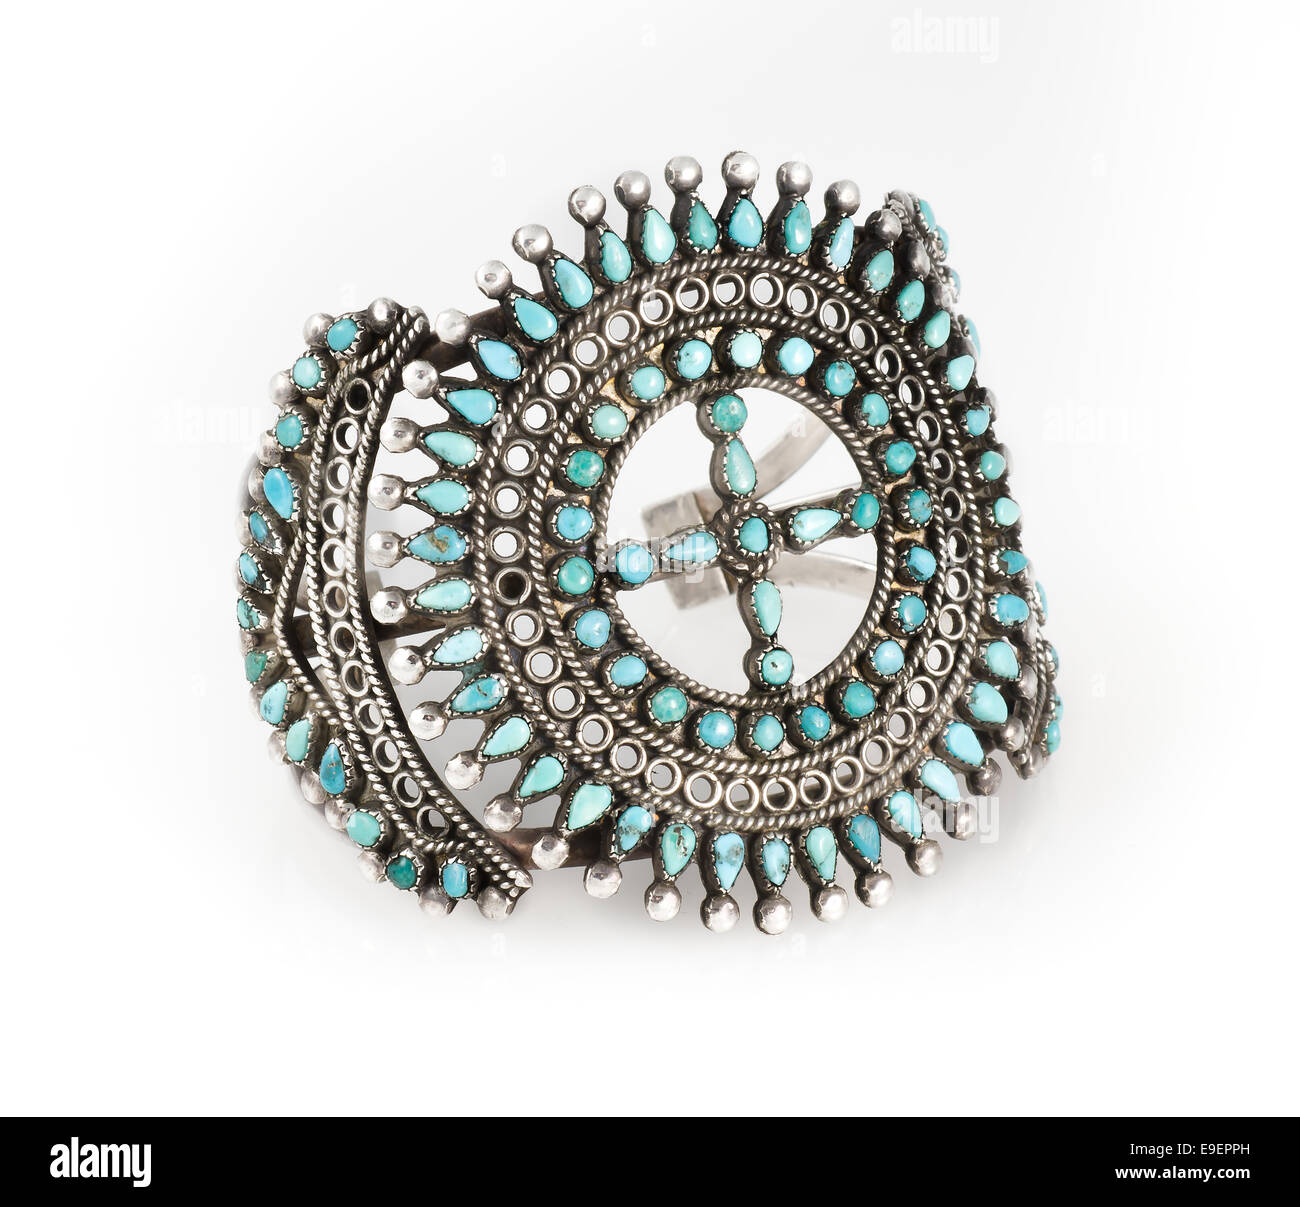 Zuni Indianer Türkis und Silber Manschette Armband. Stockfoto